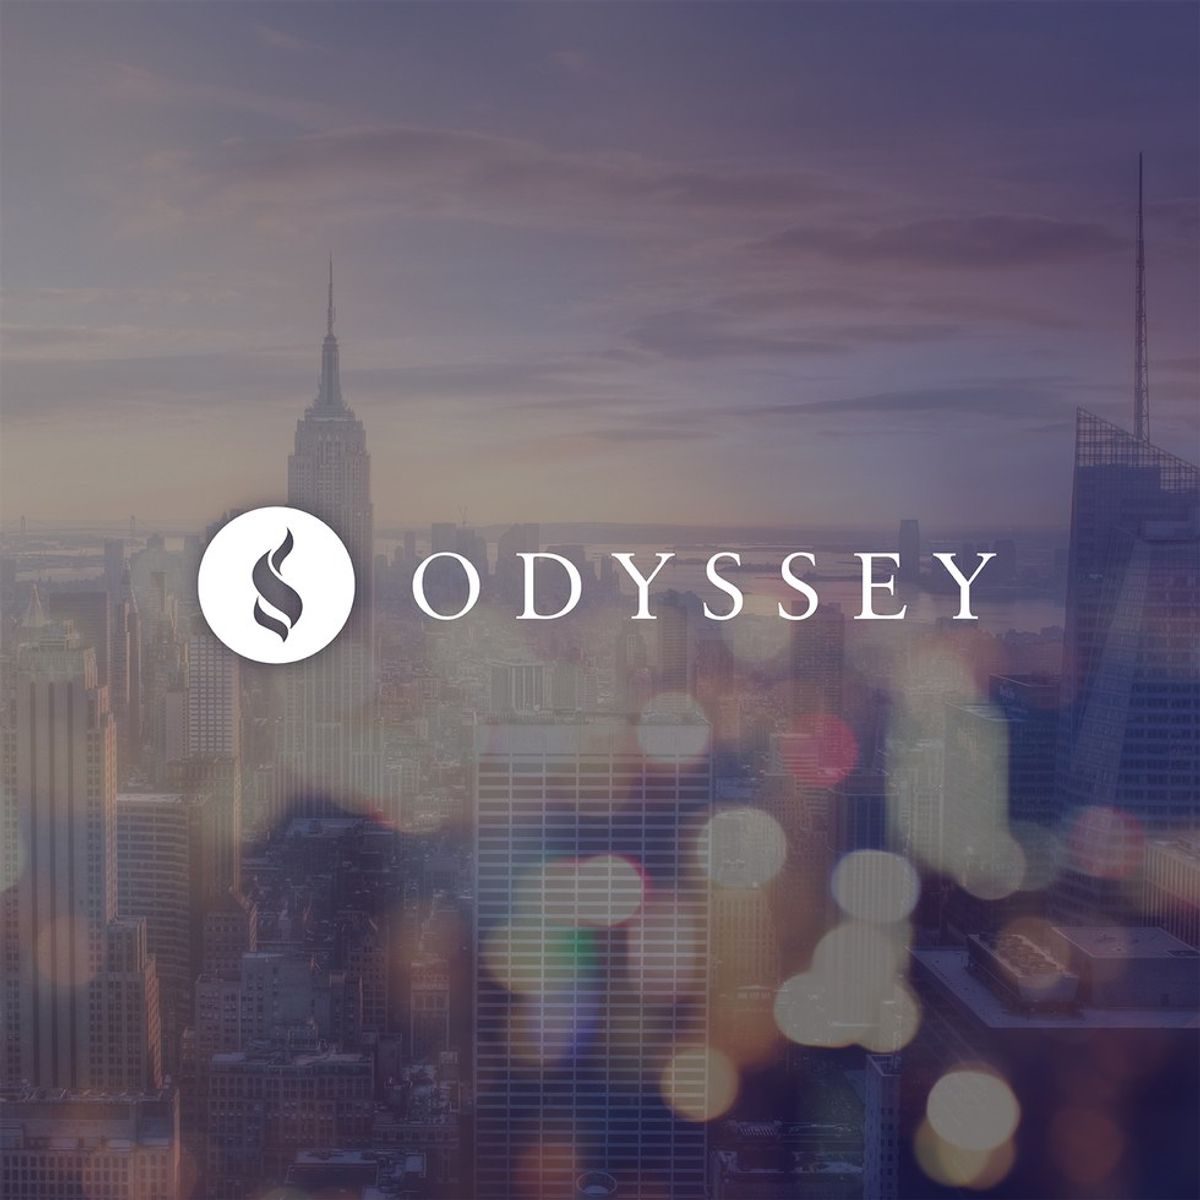 Why I Love Odyssey